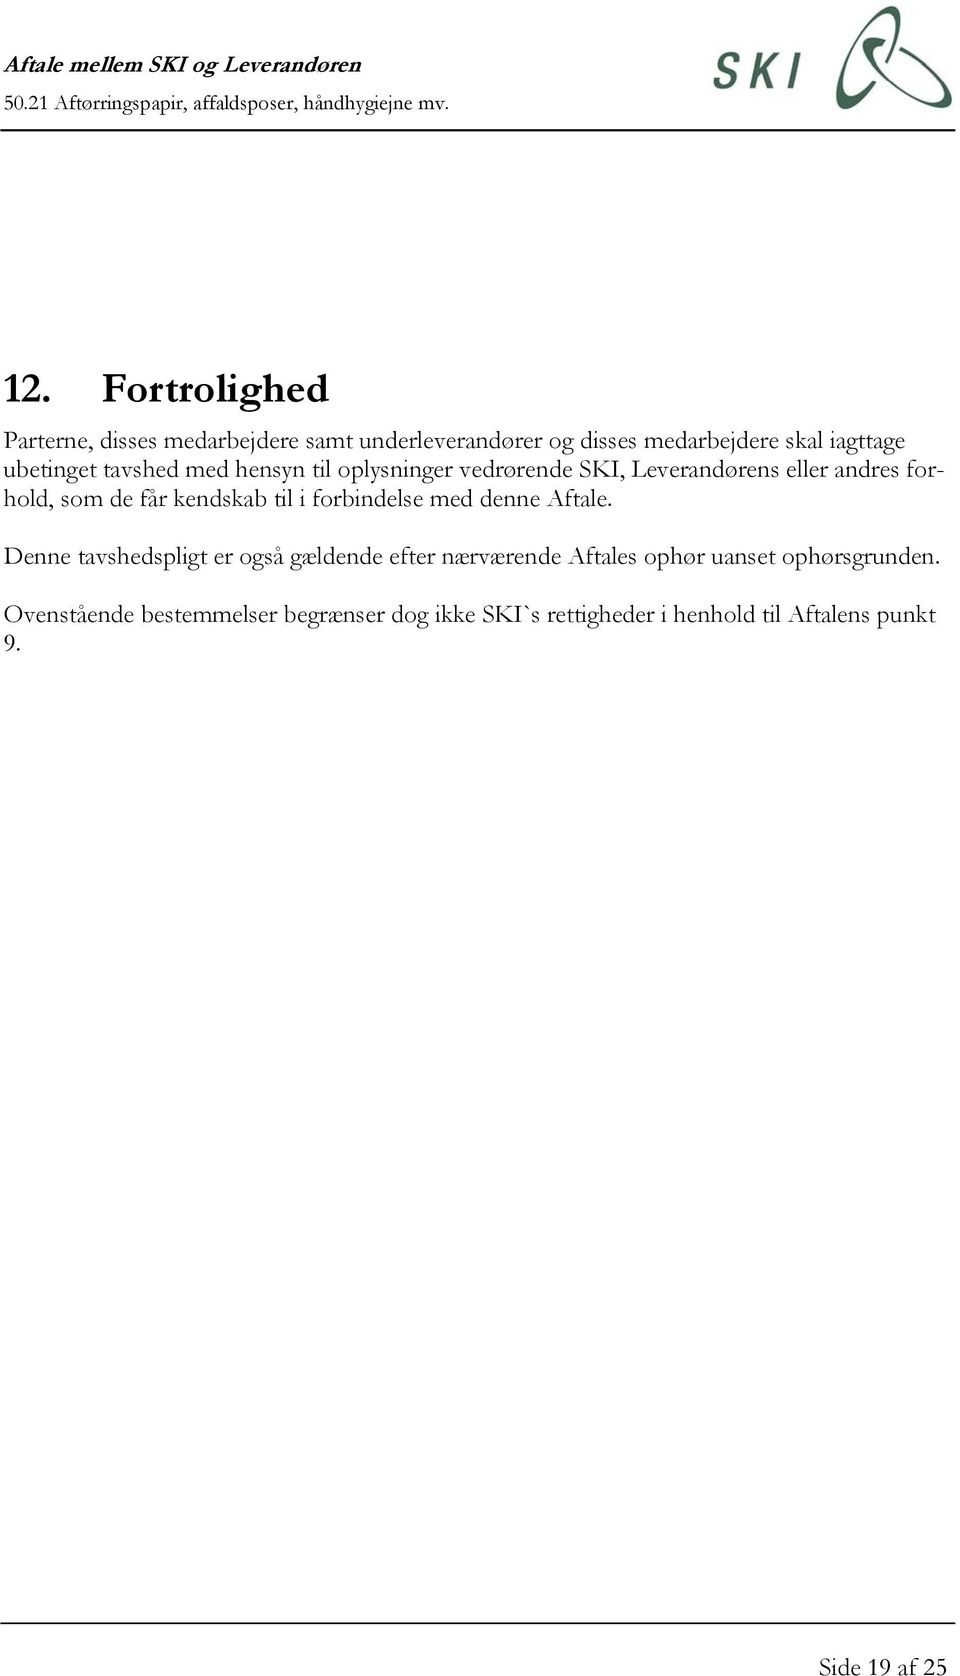 Aftale mellem SKI og Leverandøren Aftørringspapir, affaldsposer,  håndhygiejne mv. - PDF Gratis download